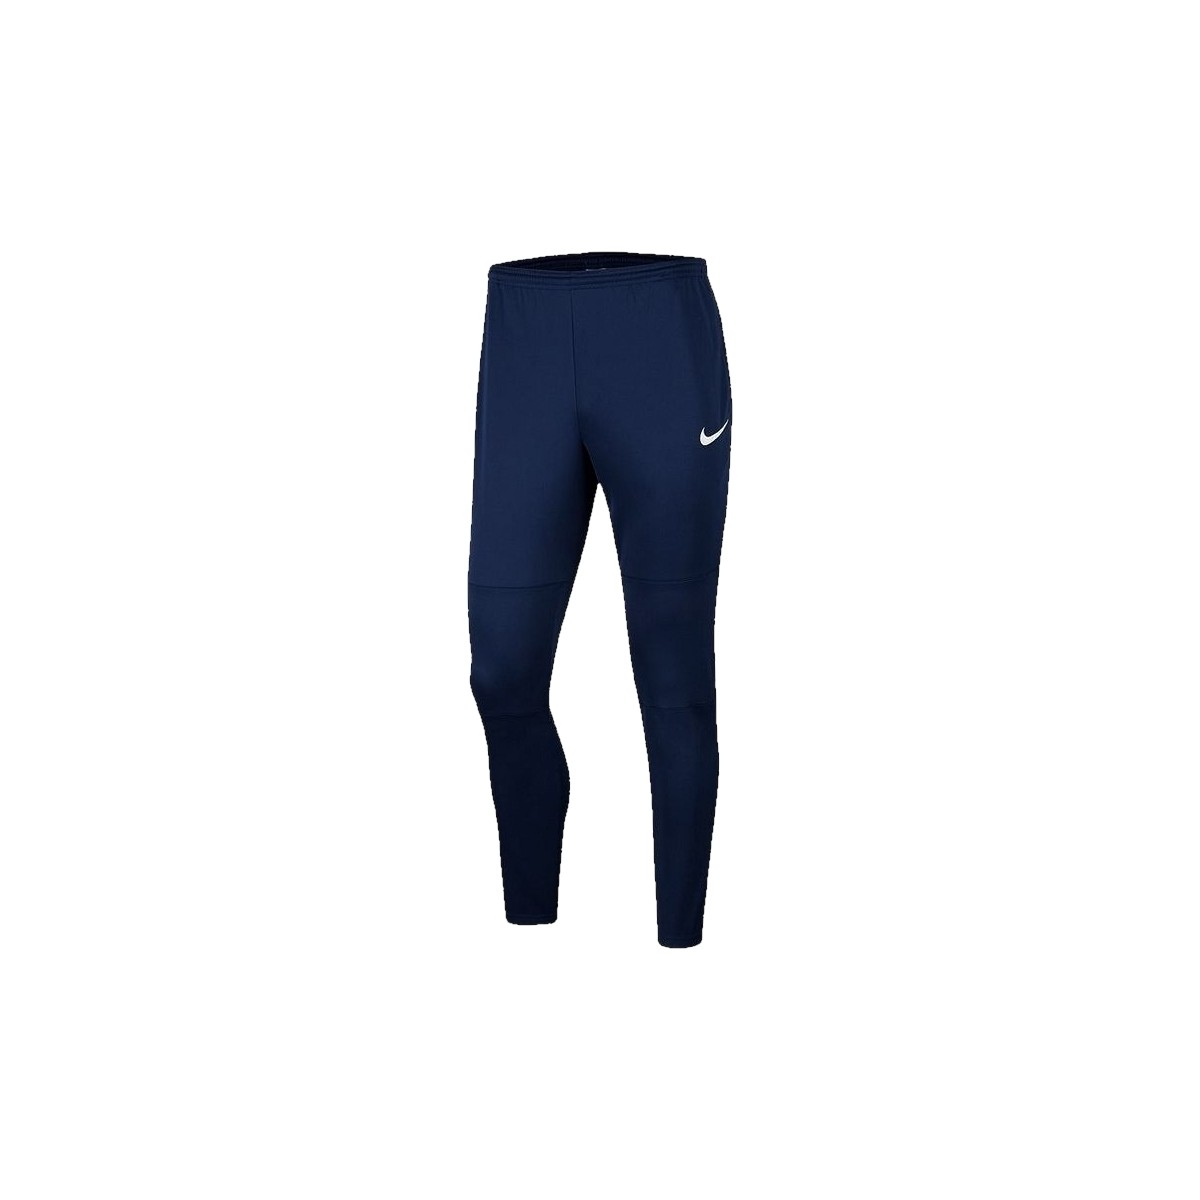 textil Herr Joggingbyxor Nike Dry Park 20 Pant Blå